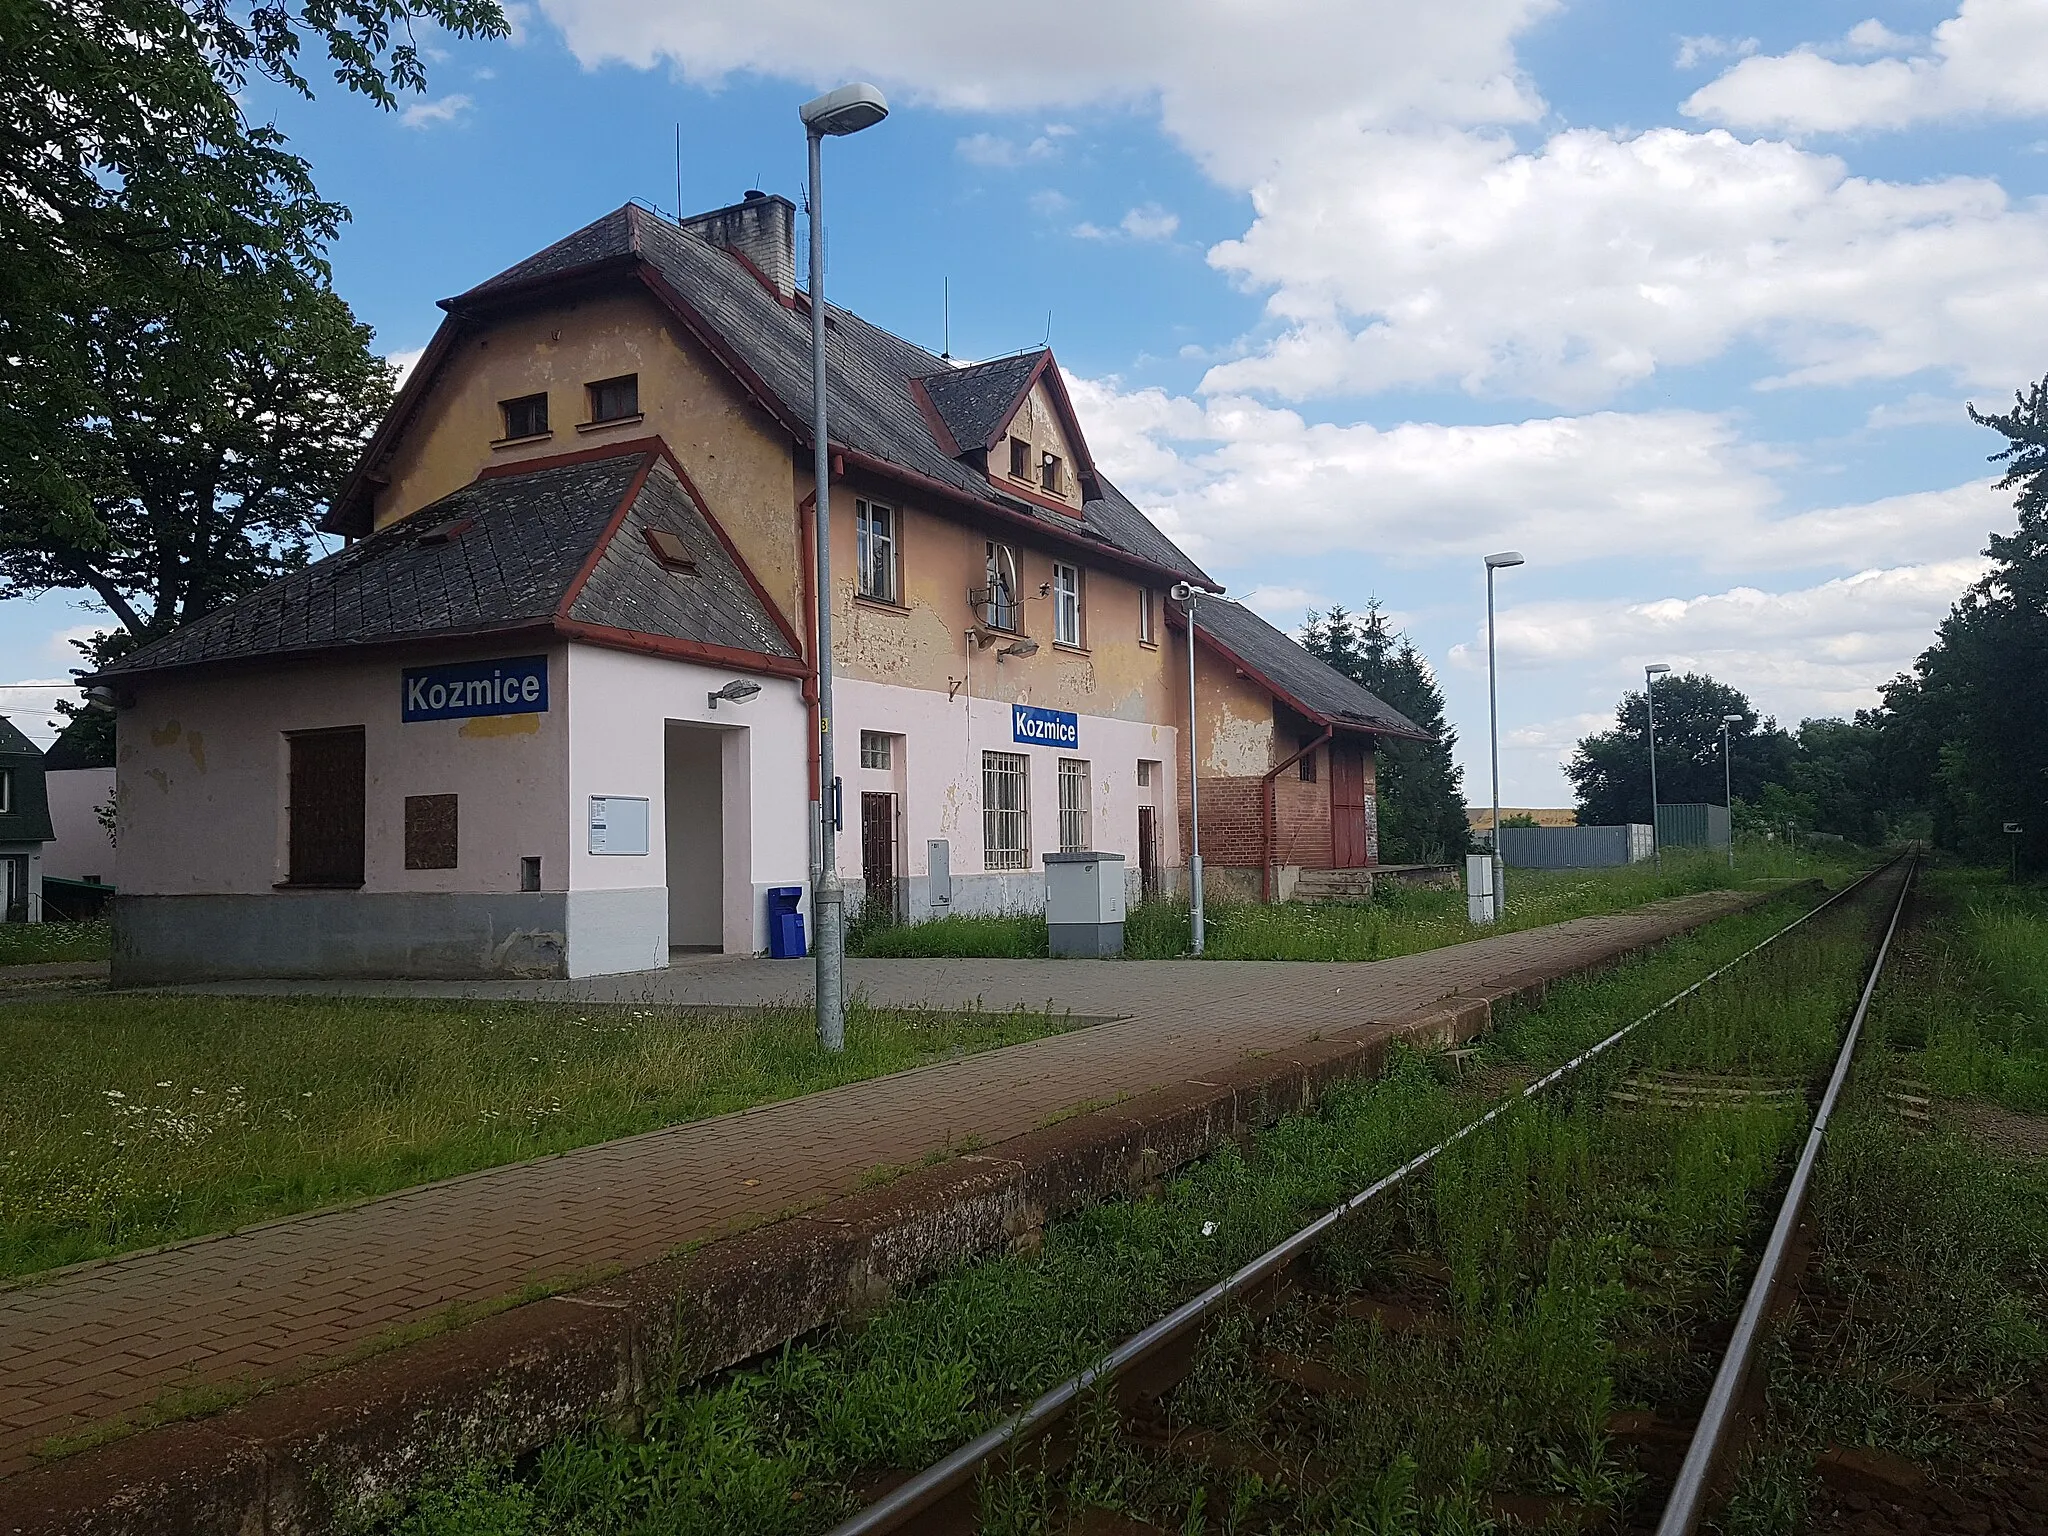 Photo showing: Train station in Kozmice, Czechia